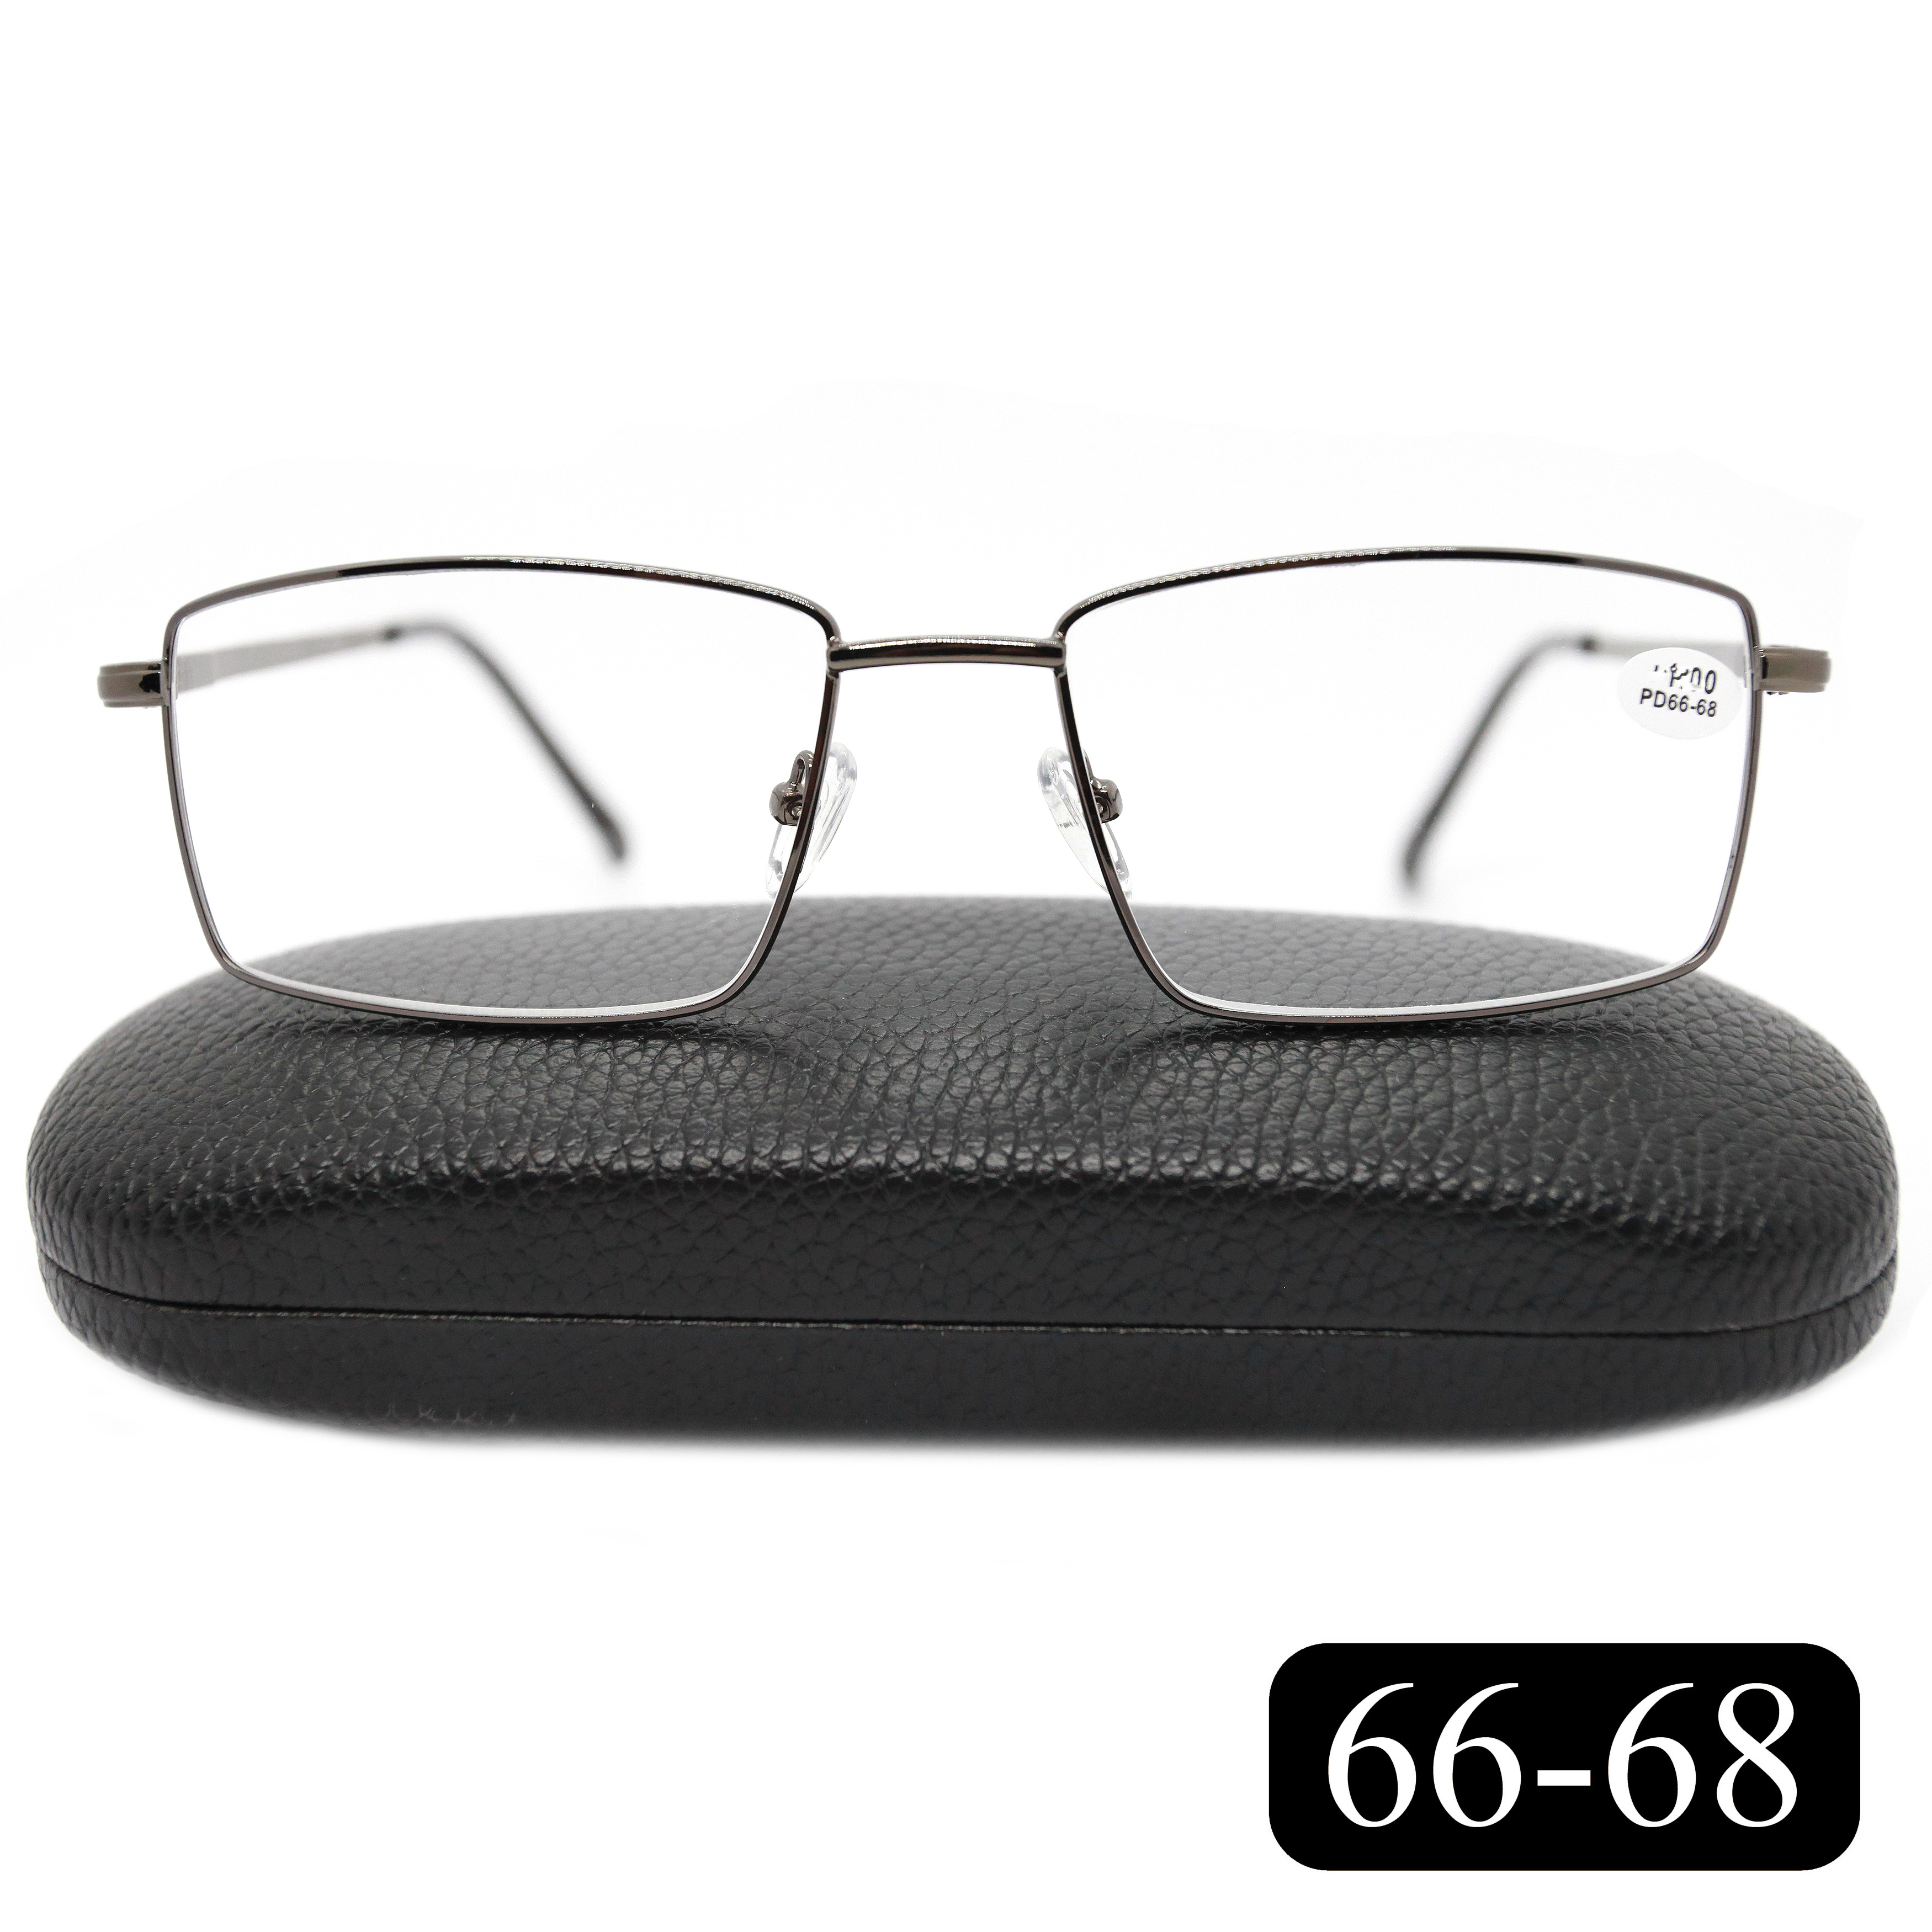 Готовые очки МОСТ 182 M2, для чтения, +3,50, с футляром, серые, РЦ 66-68